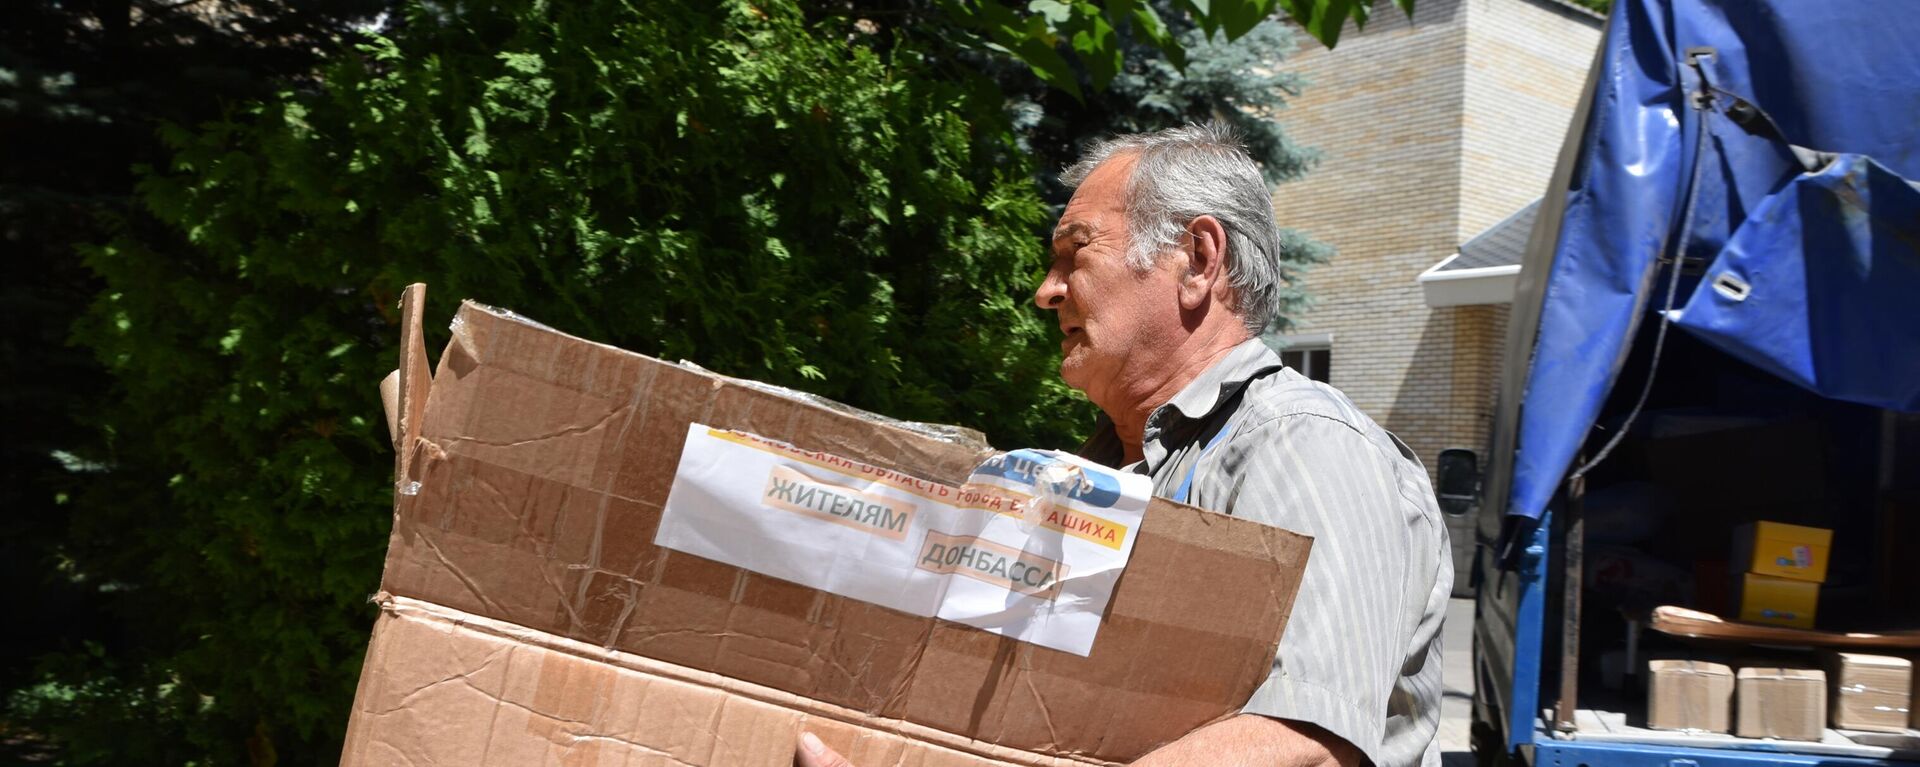 Un hombre con una caja de ayuda humanitaria para Donbás - Sputnik Mundo, 1920, 07.07.2022